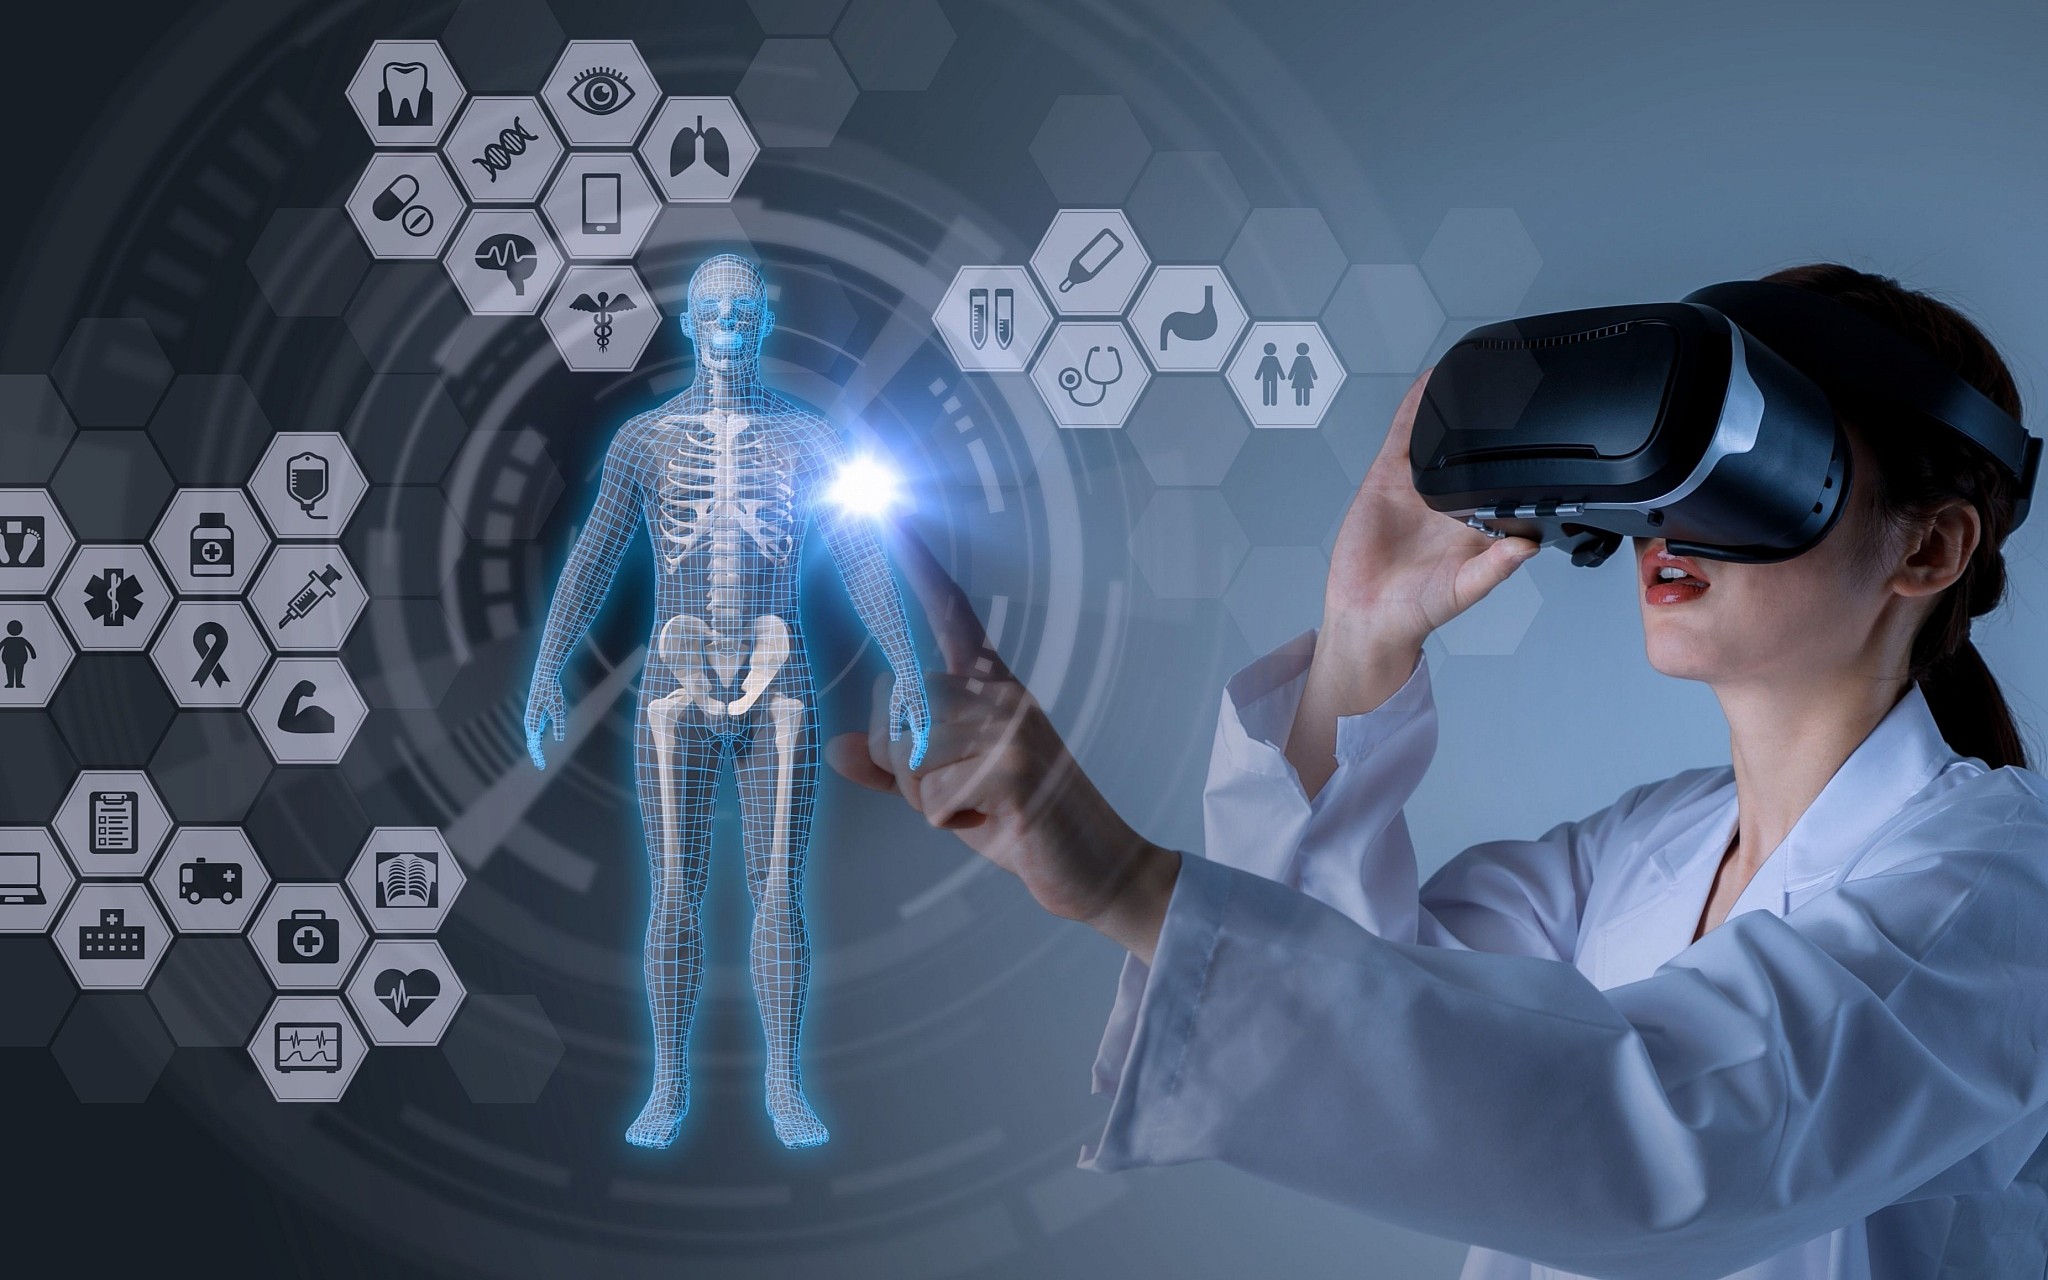 Τεχνολογία υγεία μέλλον: Ψηφιακή υγεία και εικονική φροντίδα